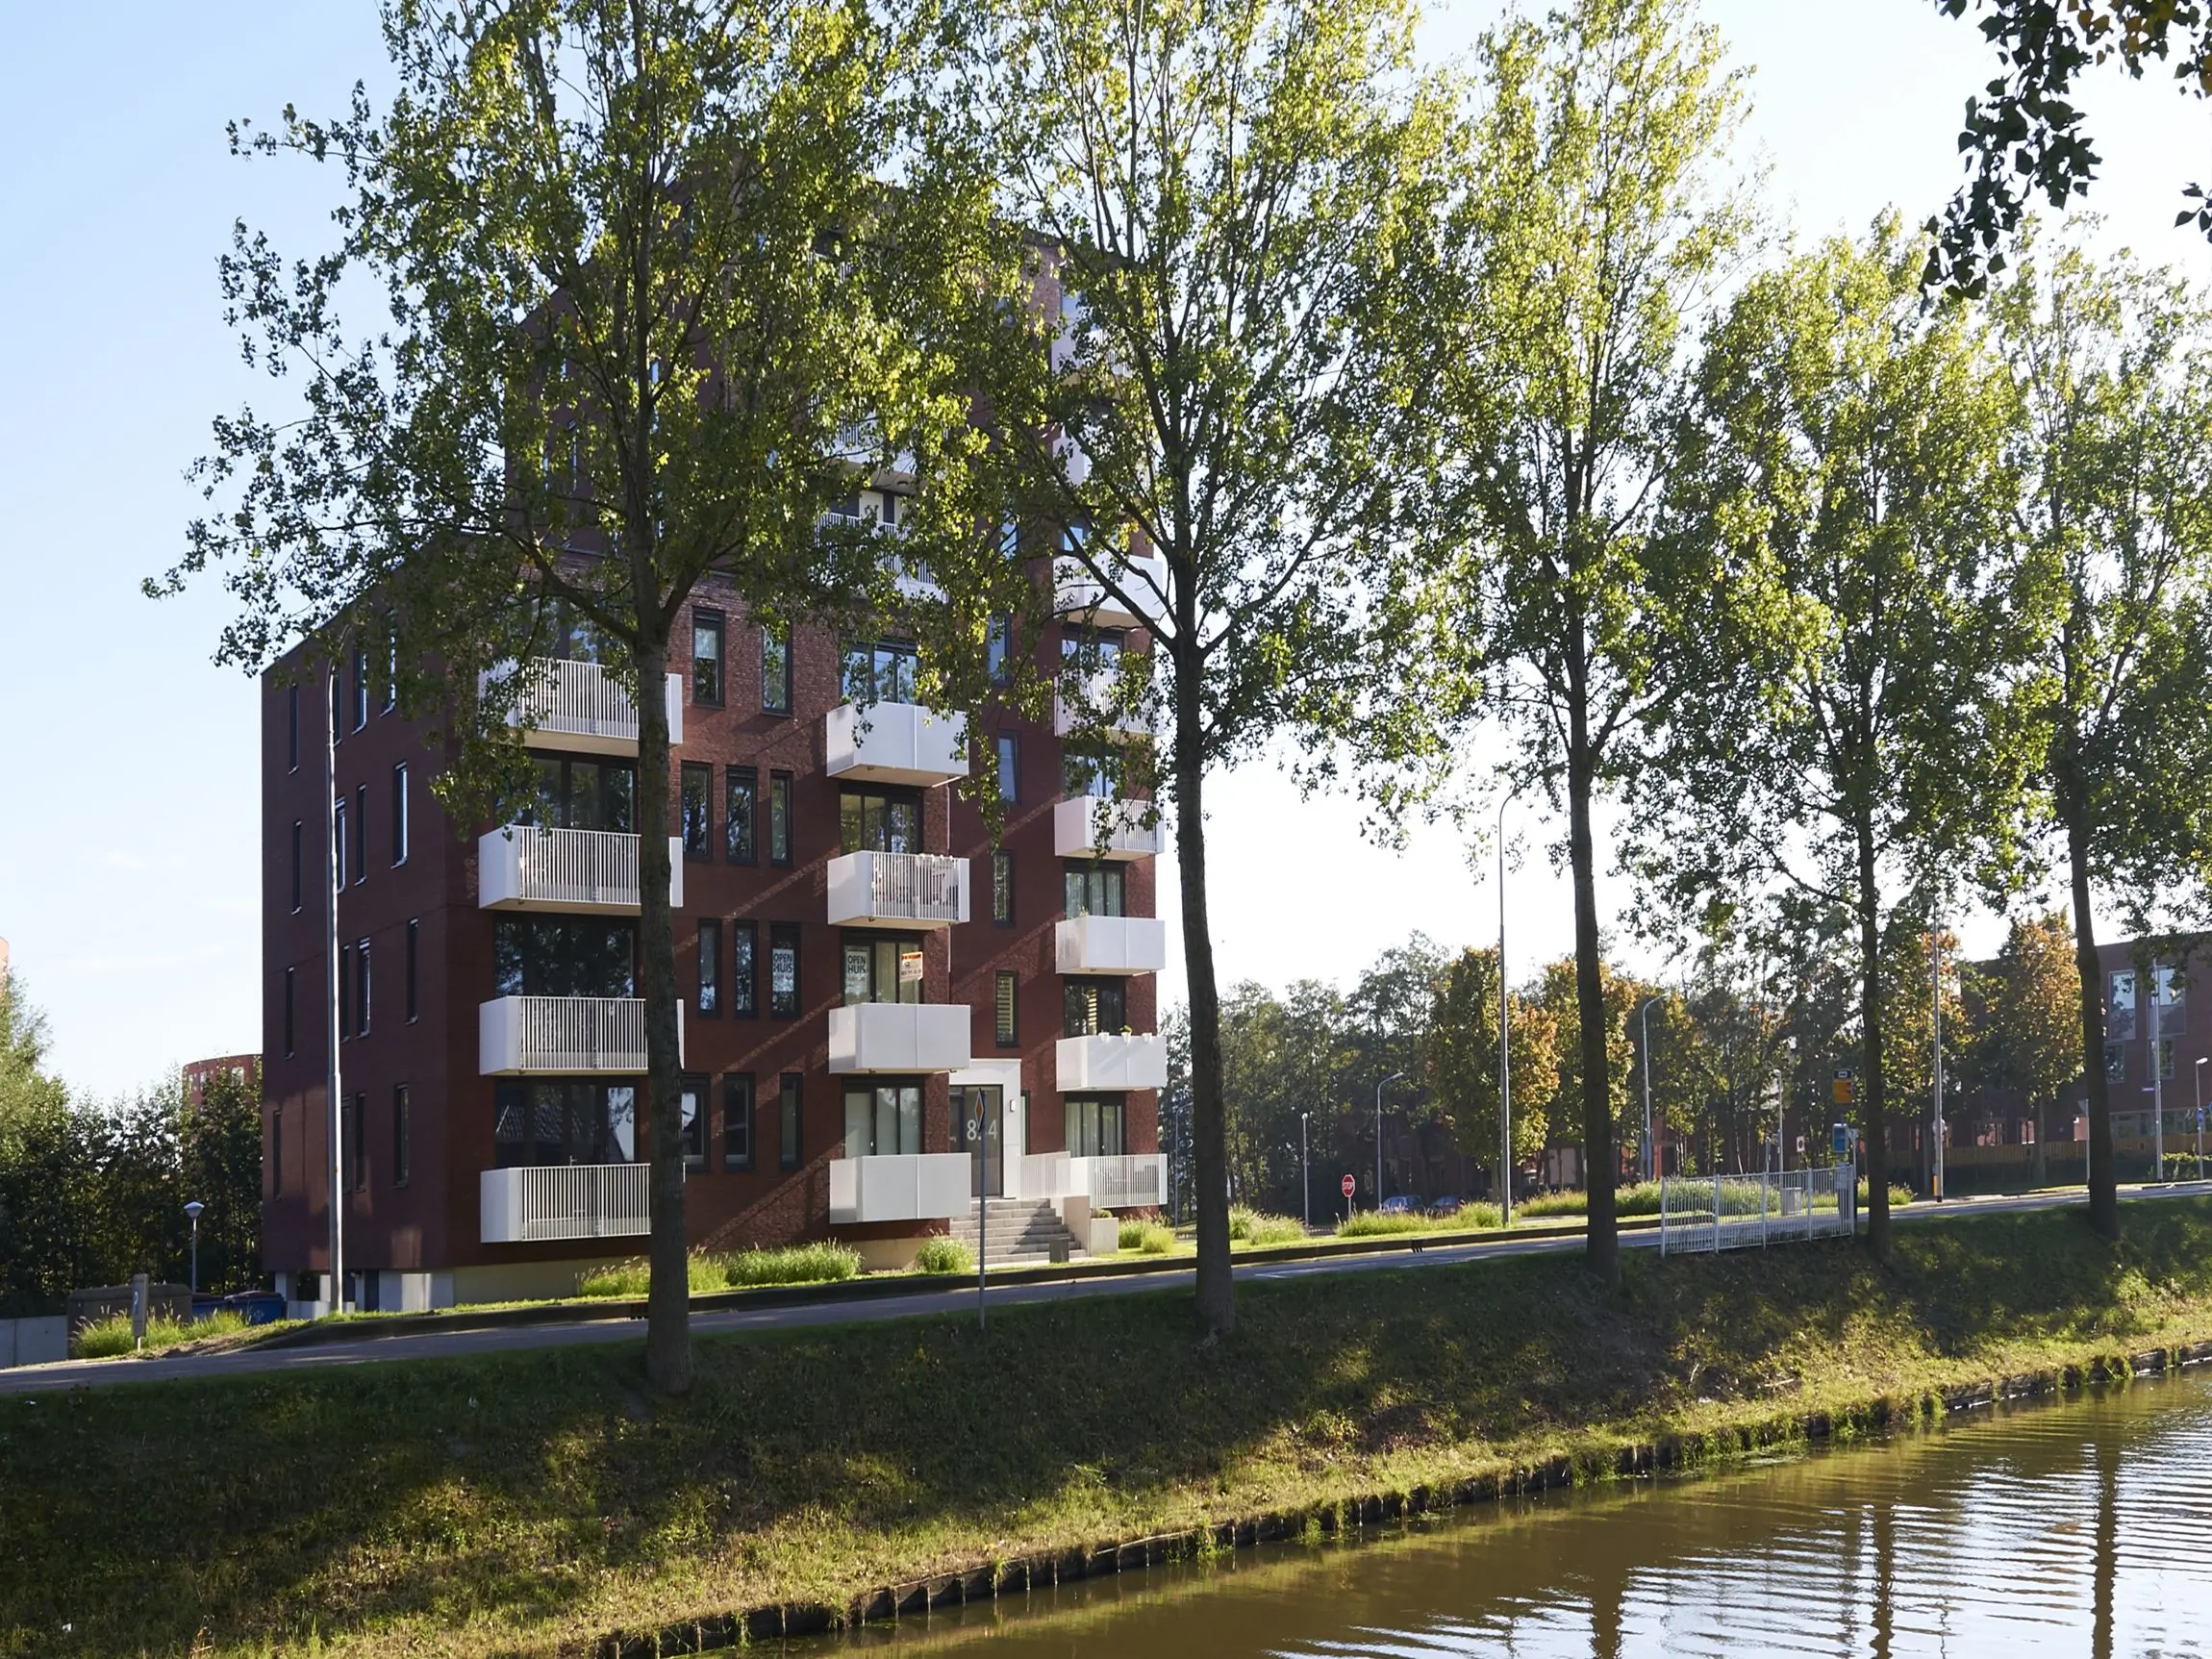 ENZO architectuur N interieur - Haarlemmermeer - Silo - Burgerveen - zakelijk - nieuwbouw - ontwikkeling - appartementen - starterswoningen - hoogbouw - Hoofddorp aan de Vaart